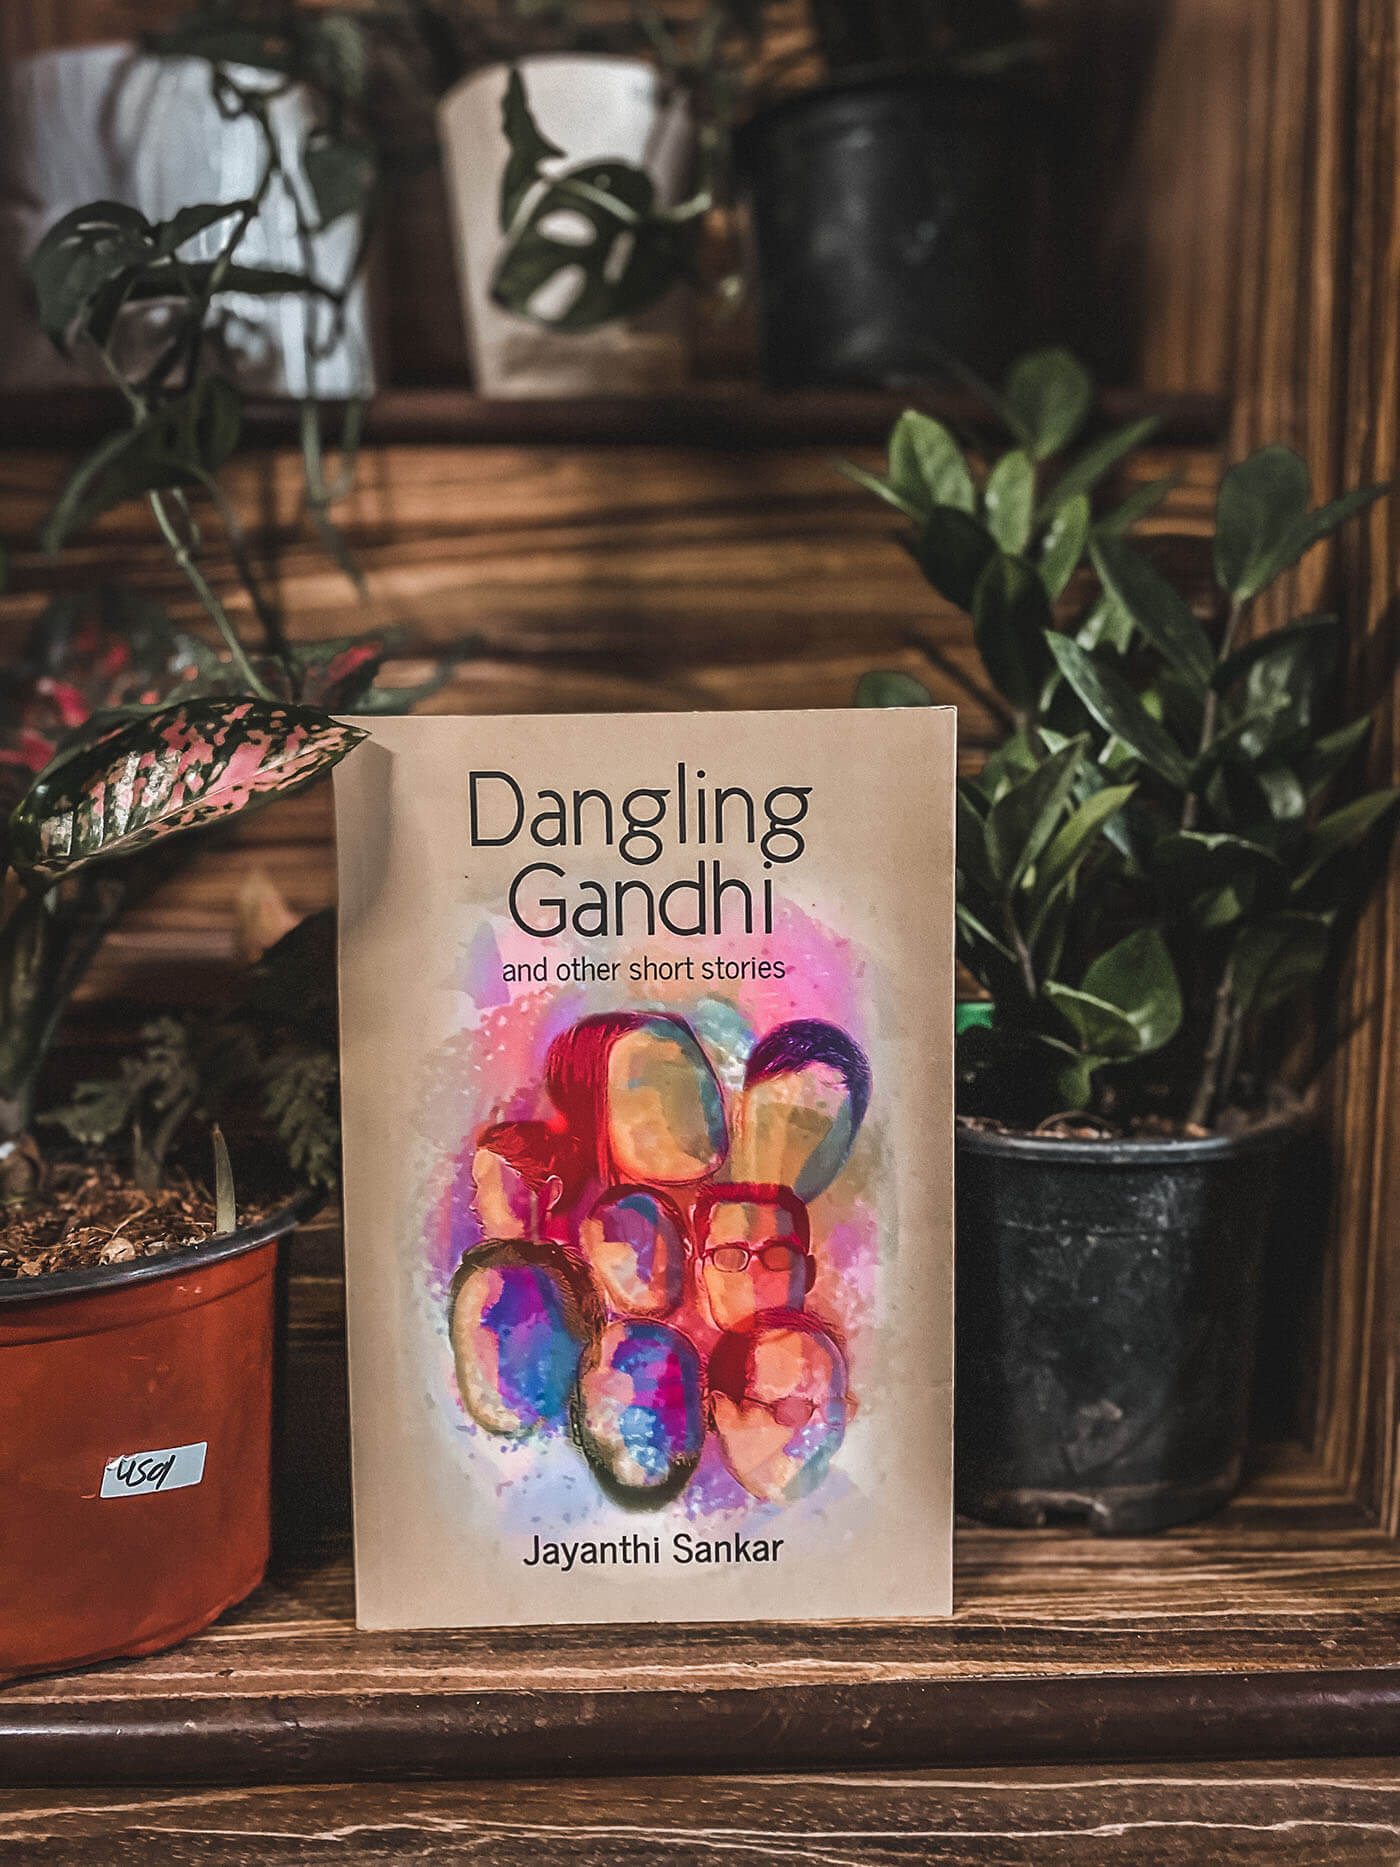 Book Review of Dangling Gandhi by Jayanthi Sankar